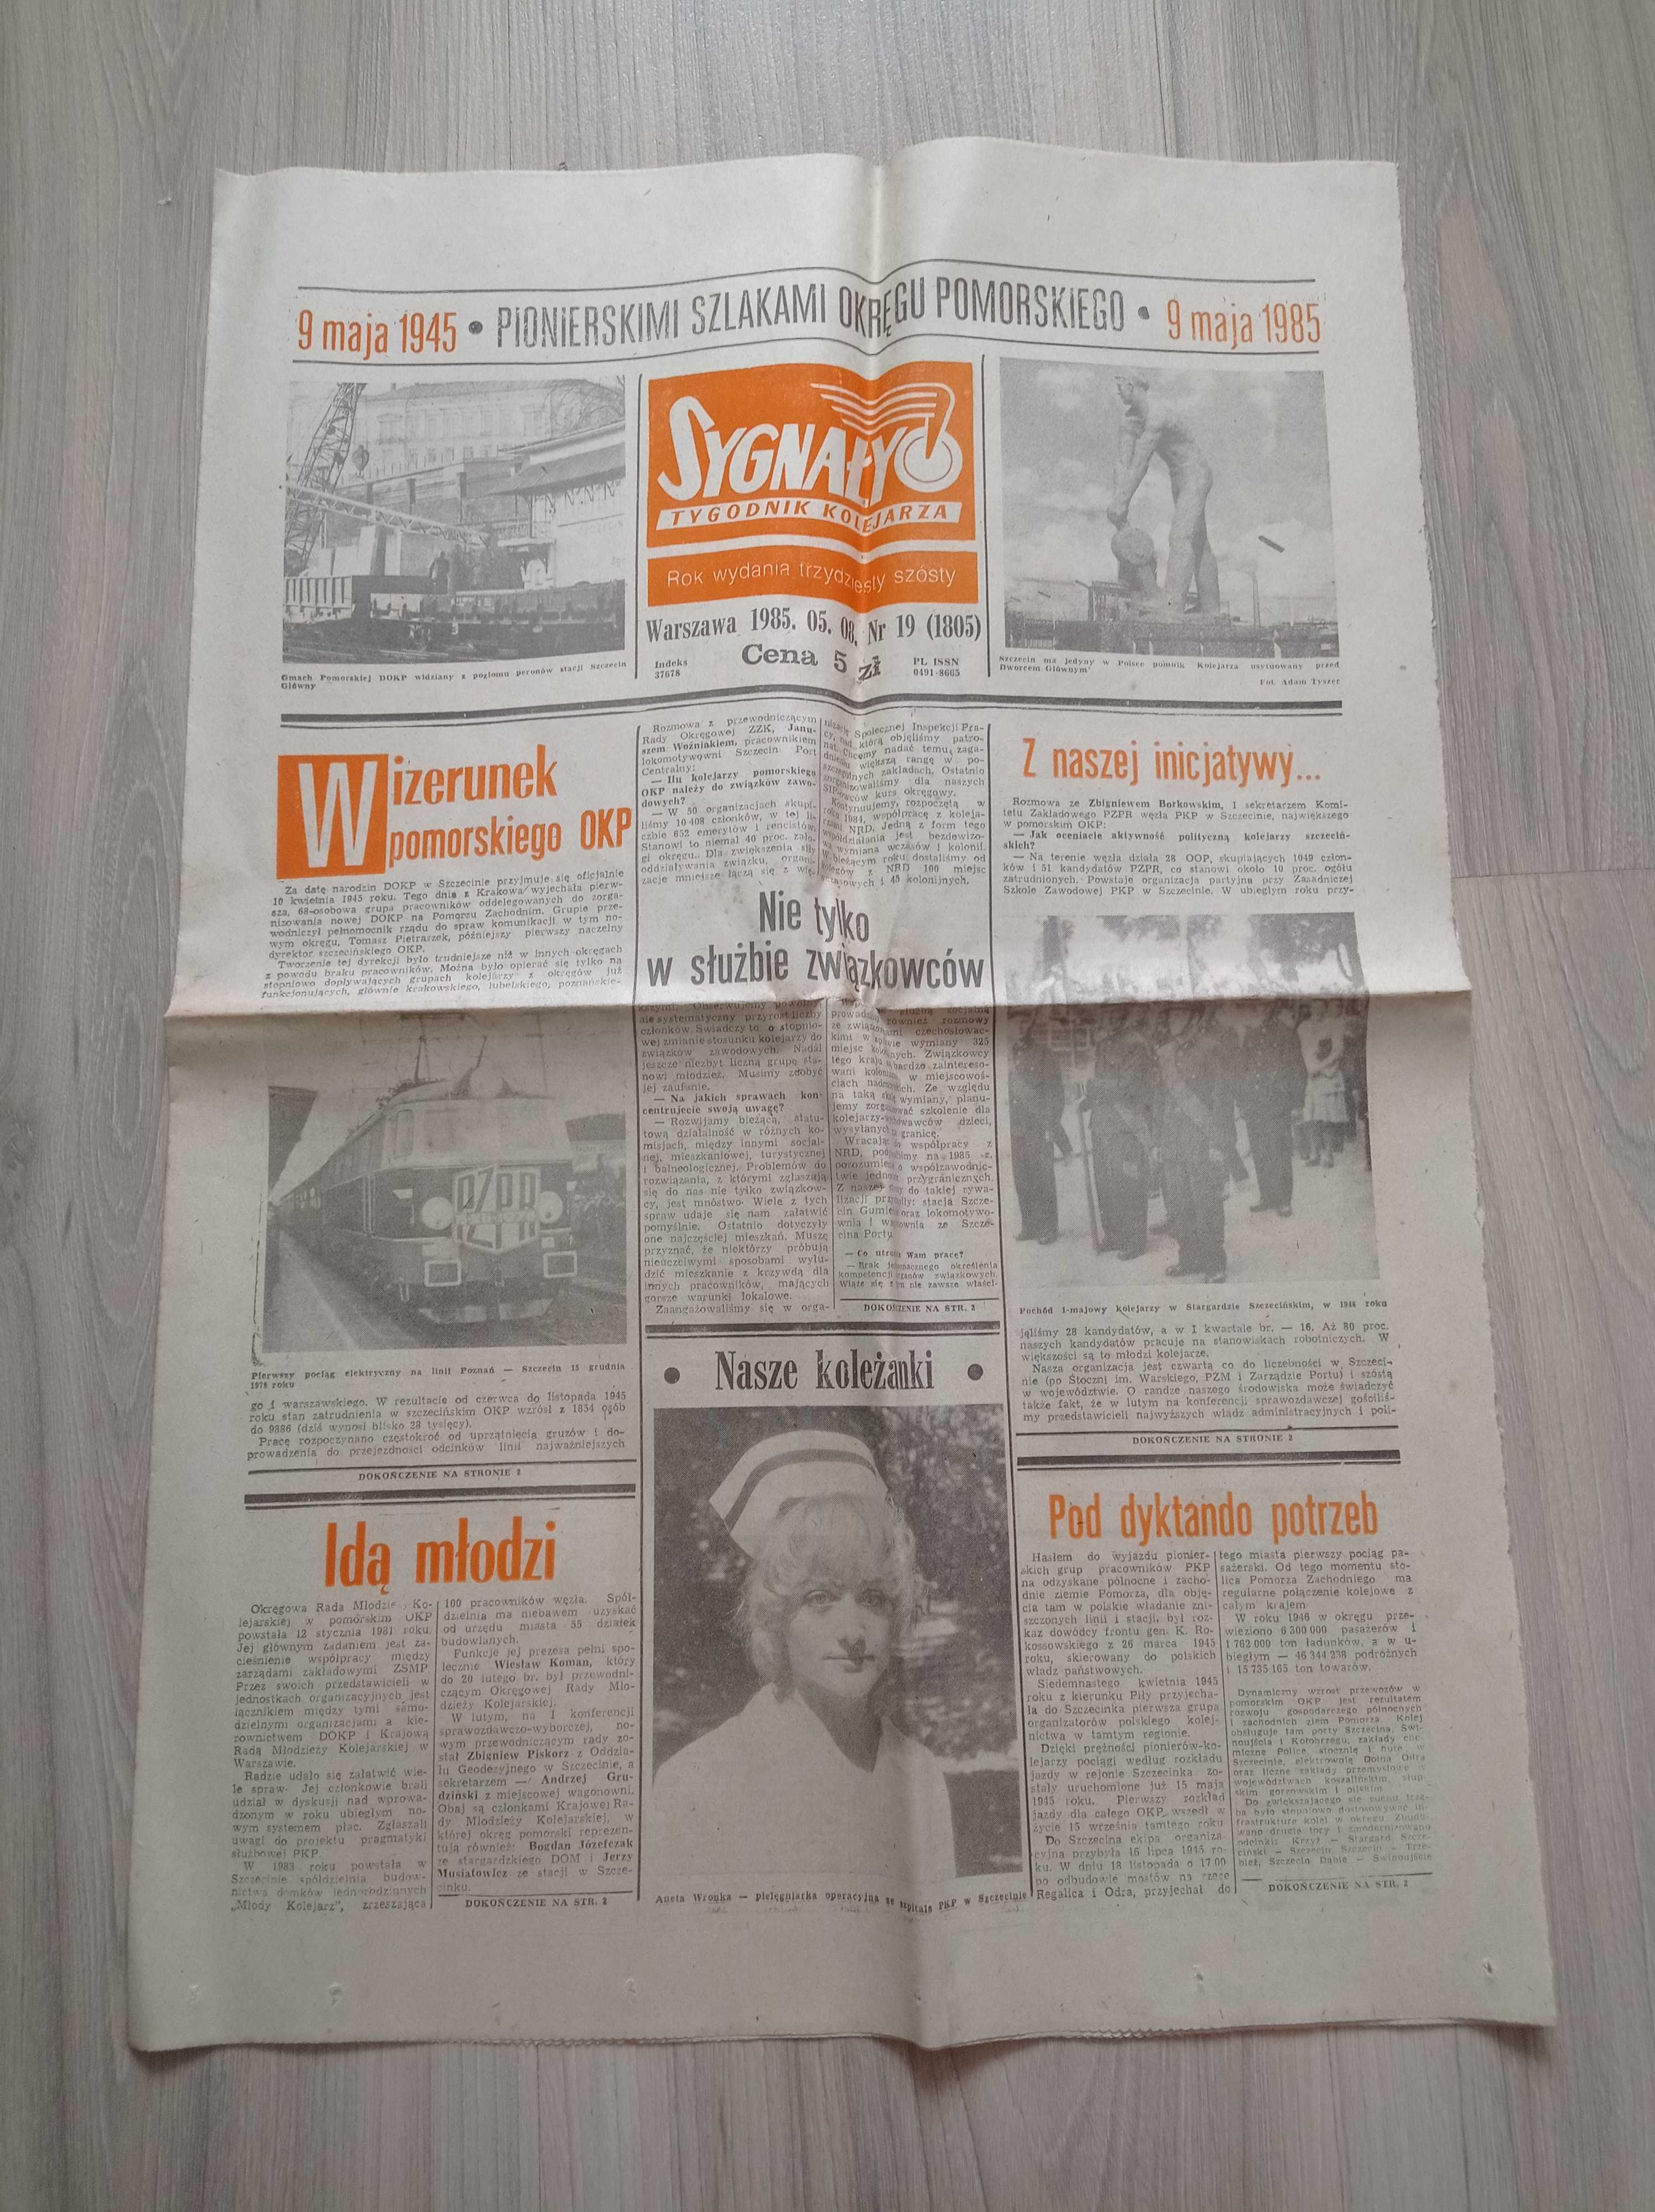 Sygnały tygodnik kolejarza nr 19/1985, 08.05.1985